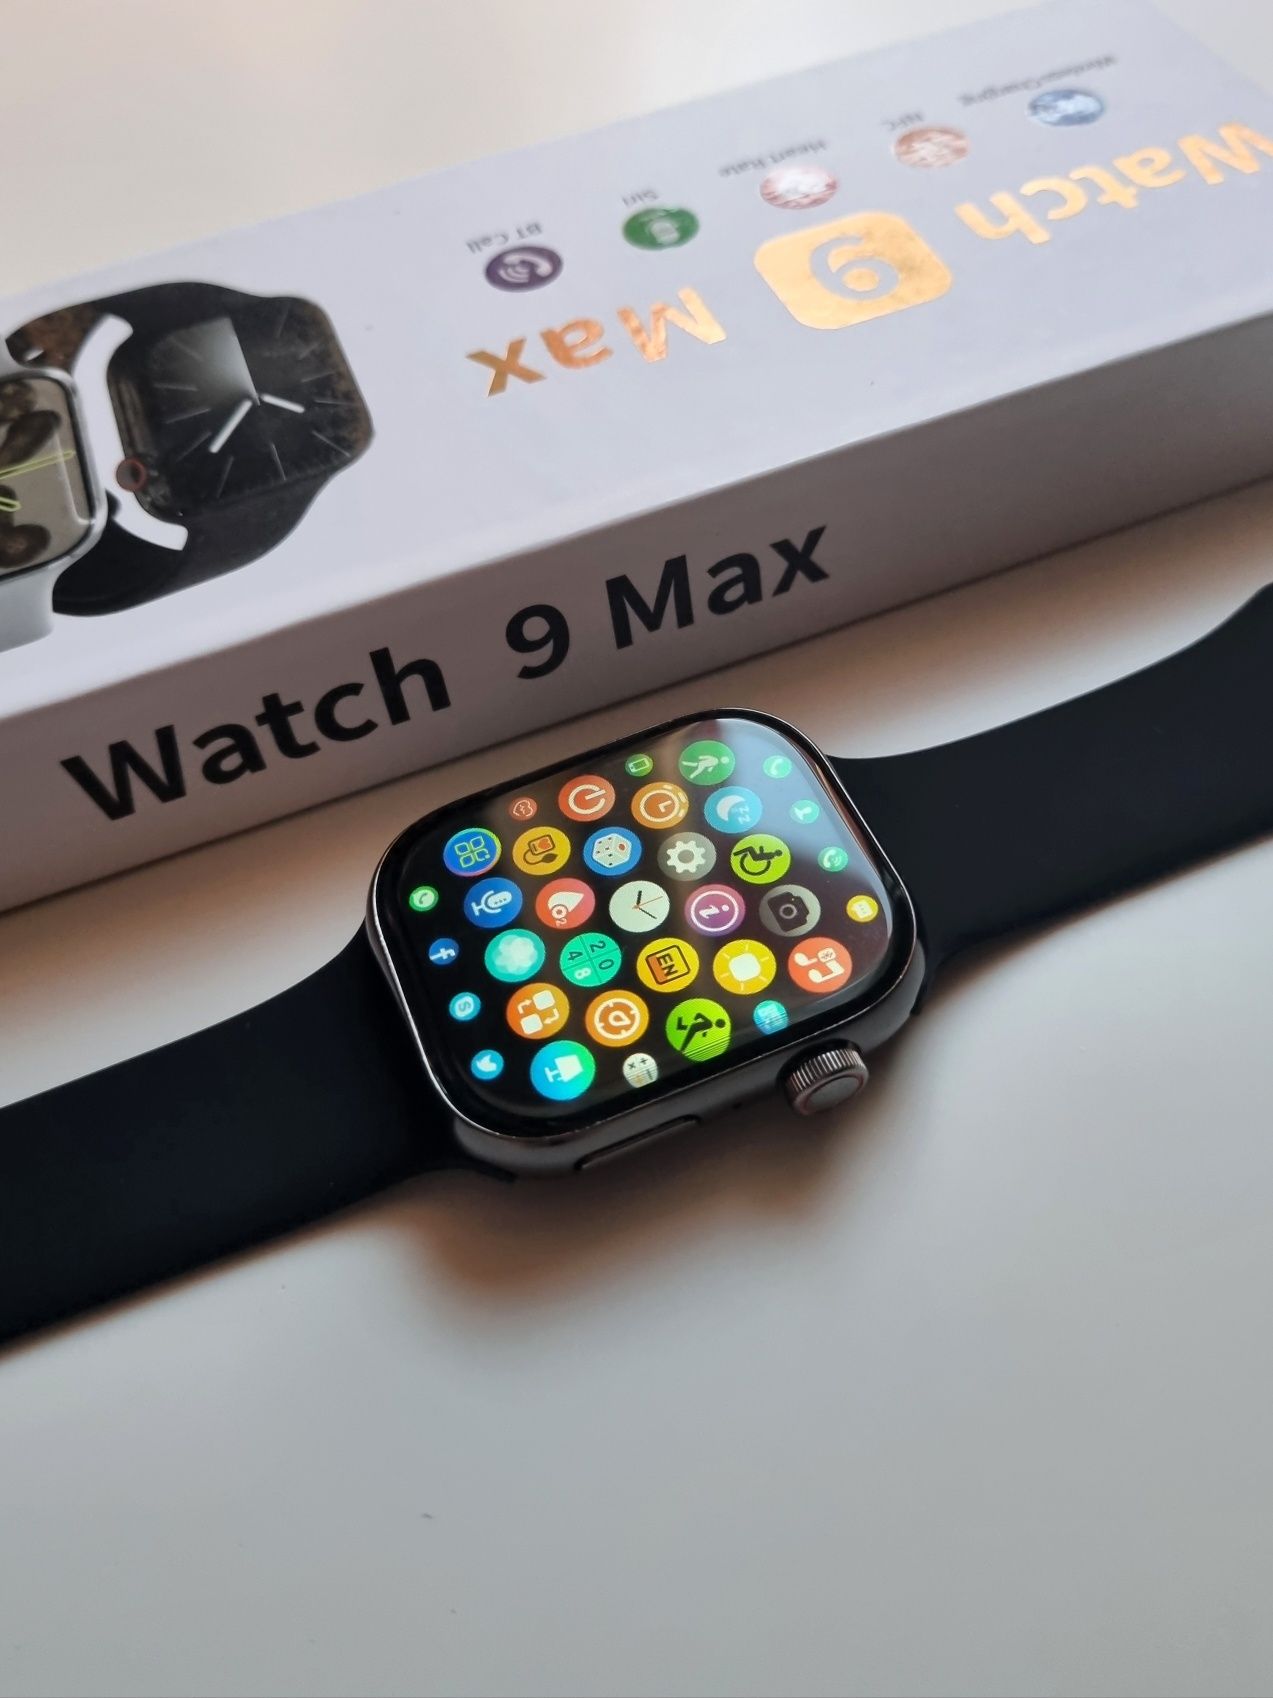 Smartwatch 9MAX czarny